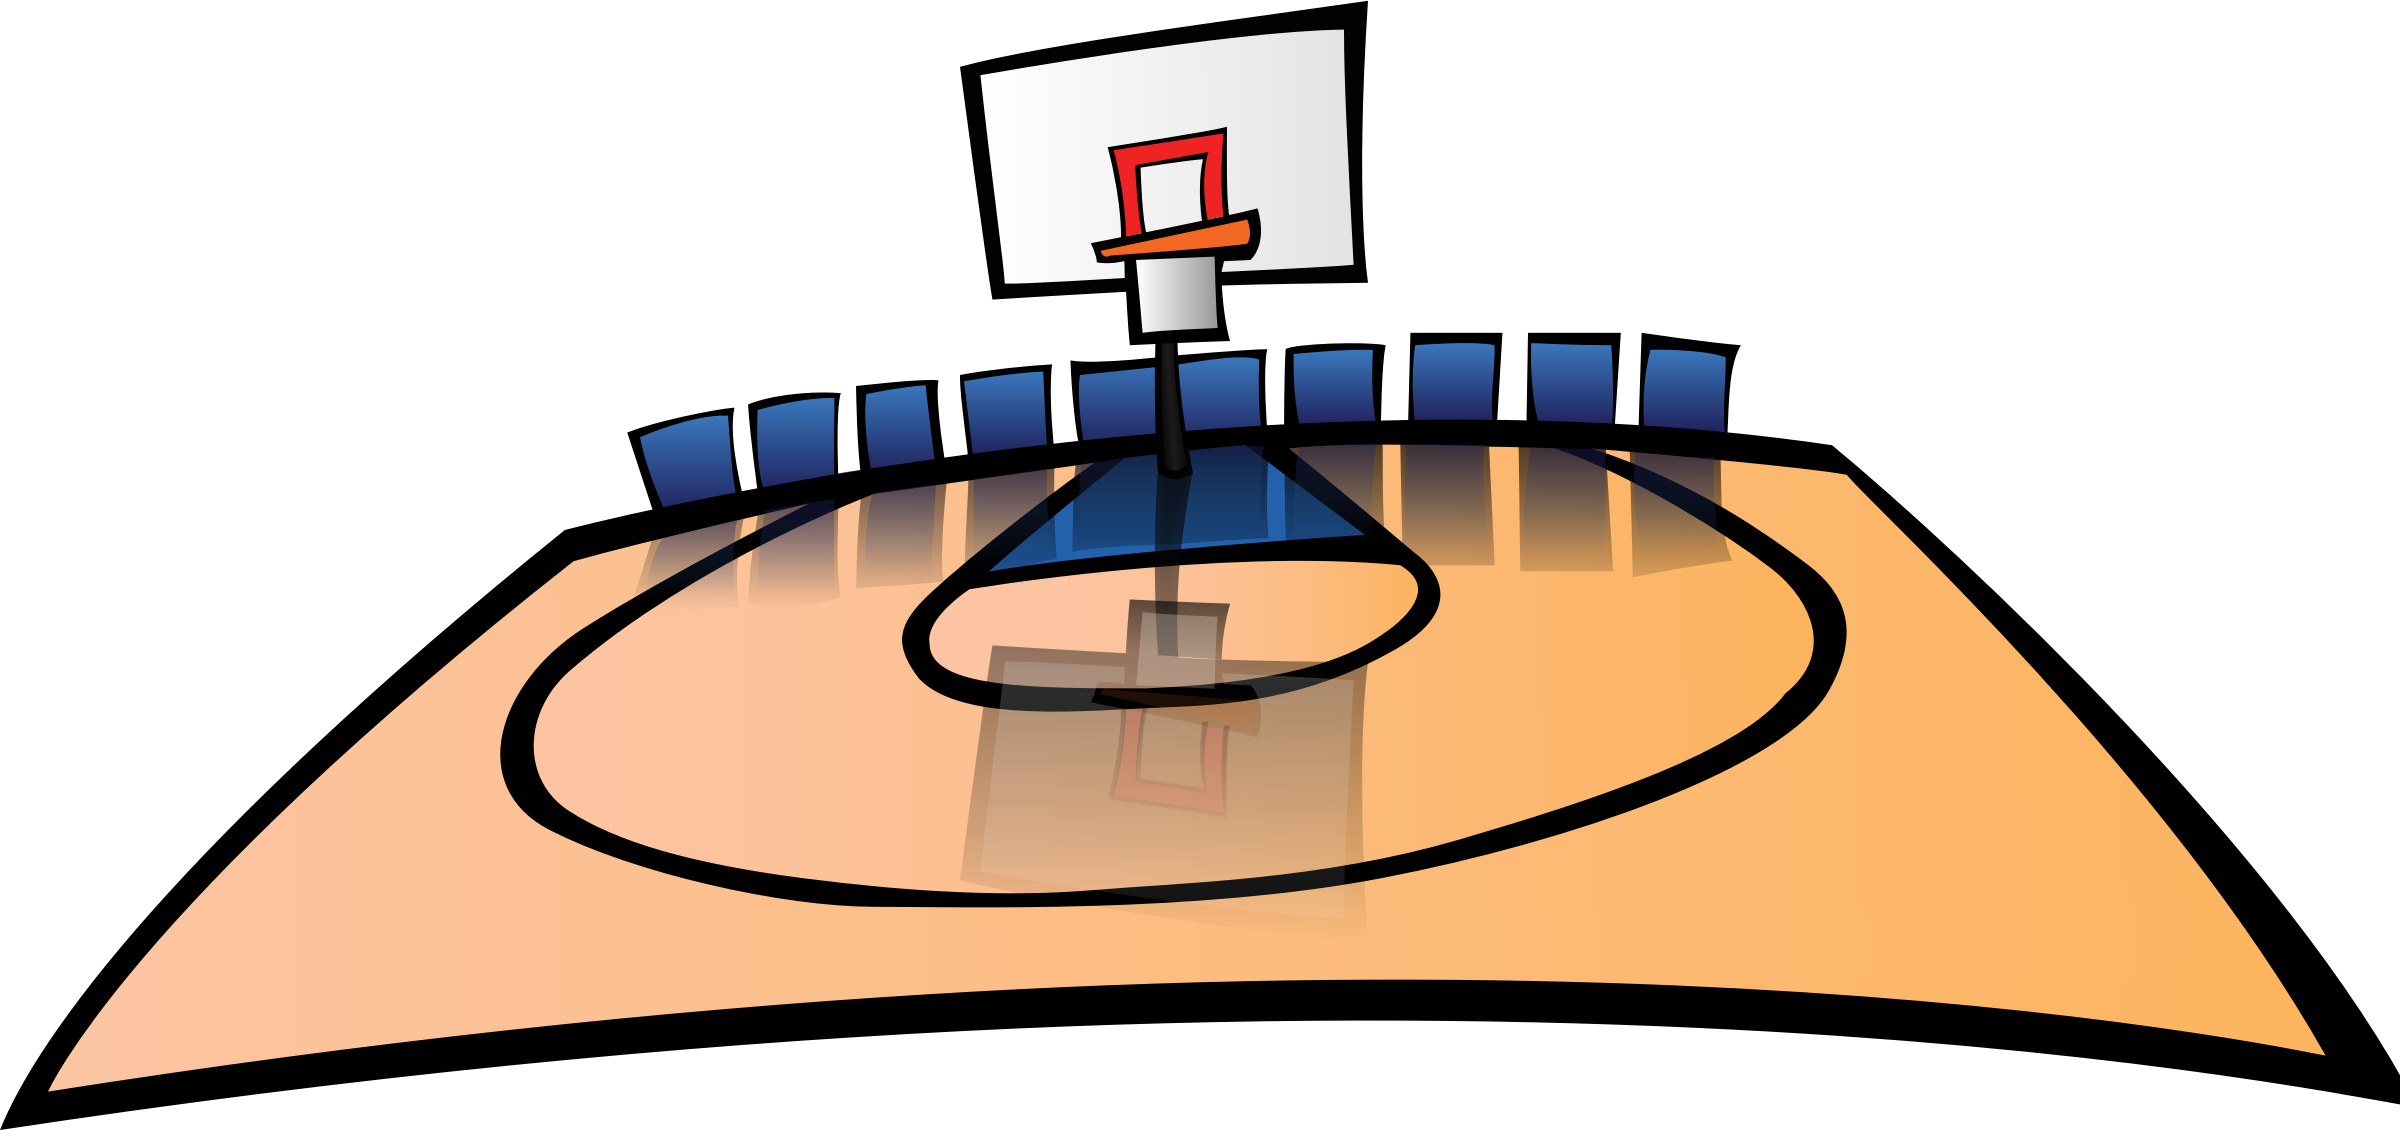 Basketball Court Cartoon Images ~ Basketball Court Clipart 2 | Bodenewasurk